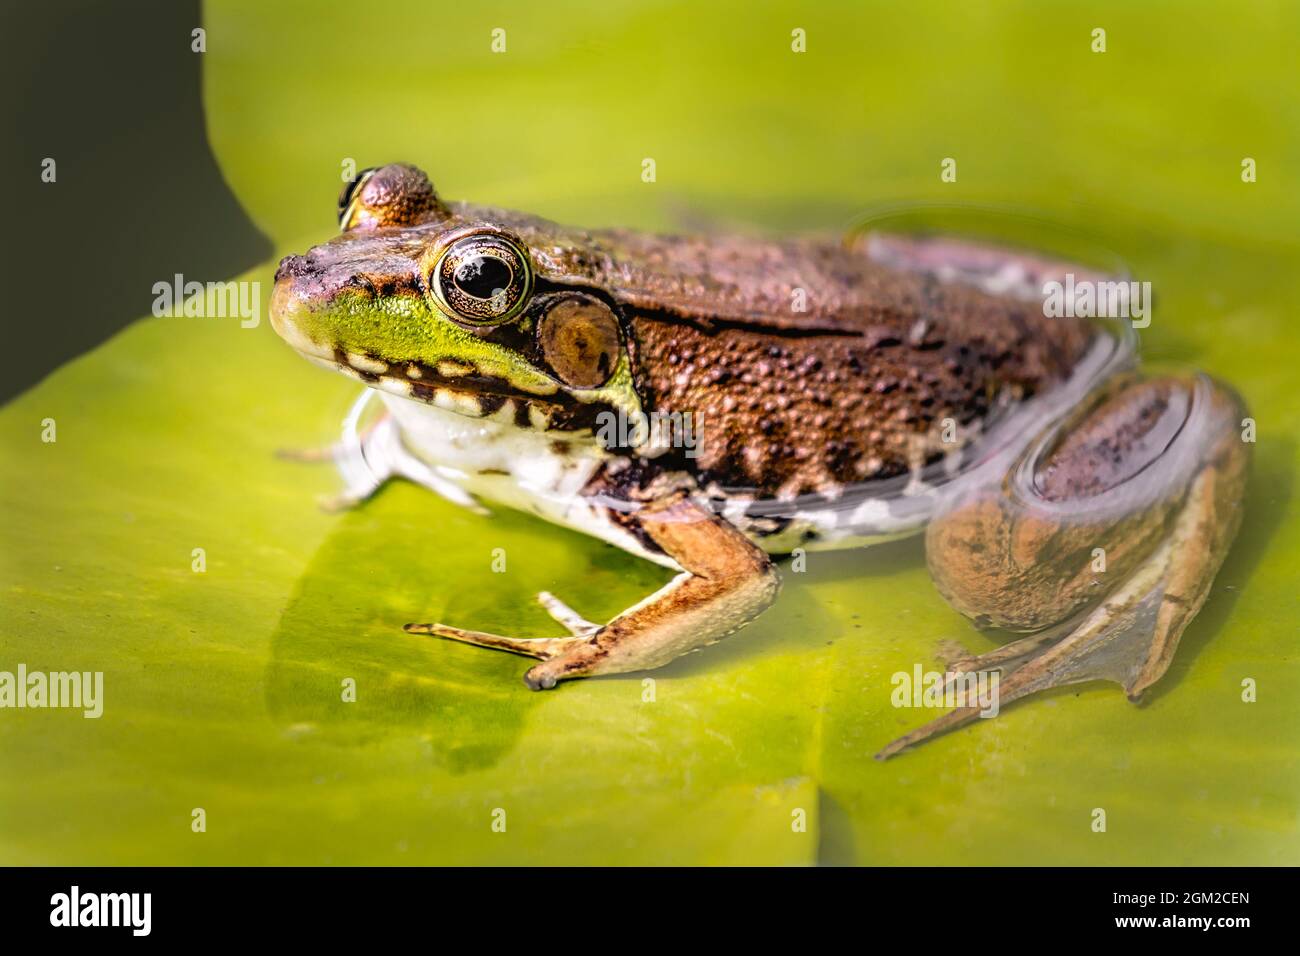 American Bull Frog sitzt auf einer Seerosenunterlage in einem Teich. Dieses Bild ist sowohl in Farbe als auch in Schwarzweiß verfügbar. Zum Anzeigen zusätzlicher ima Stockfoto